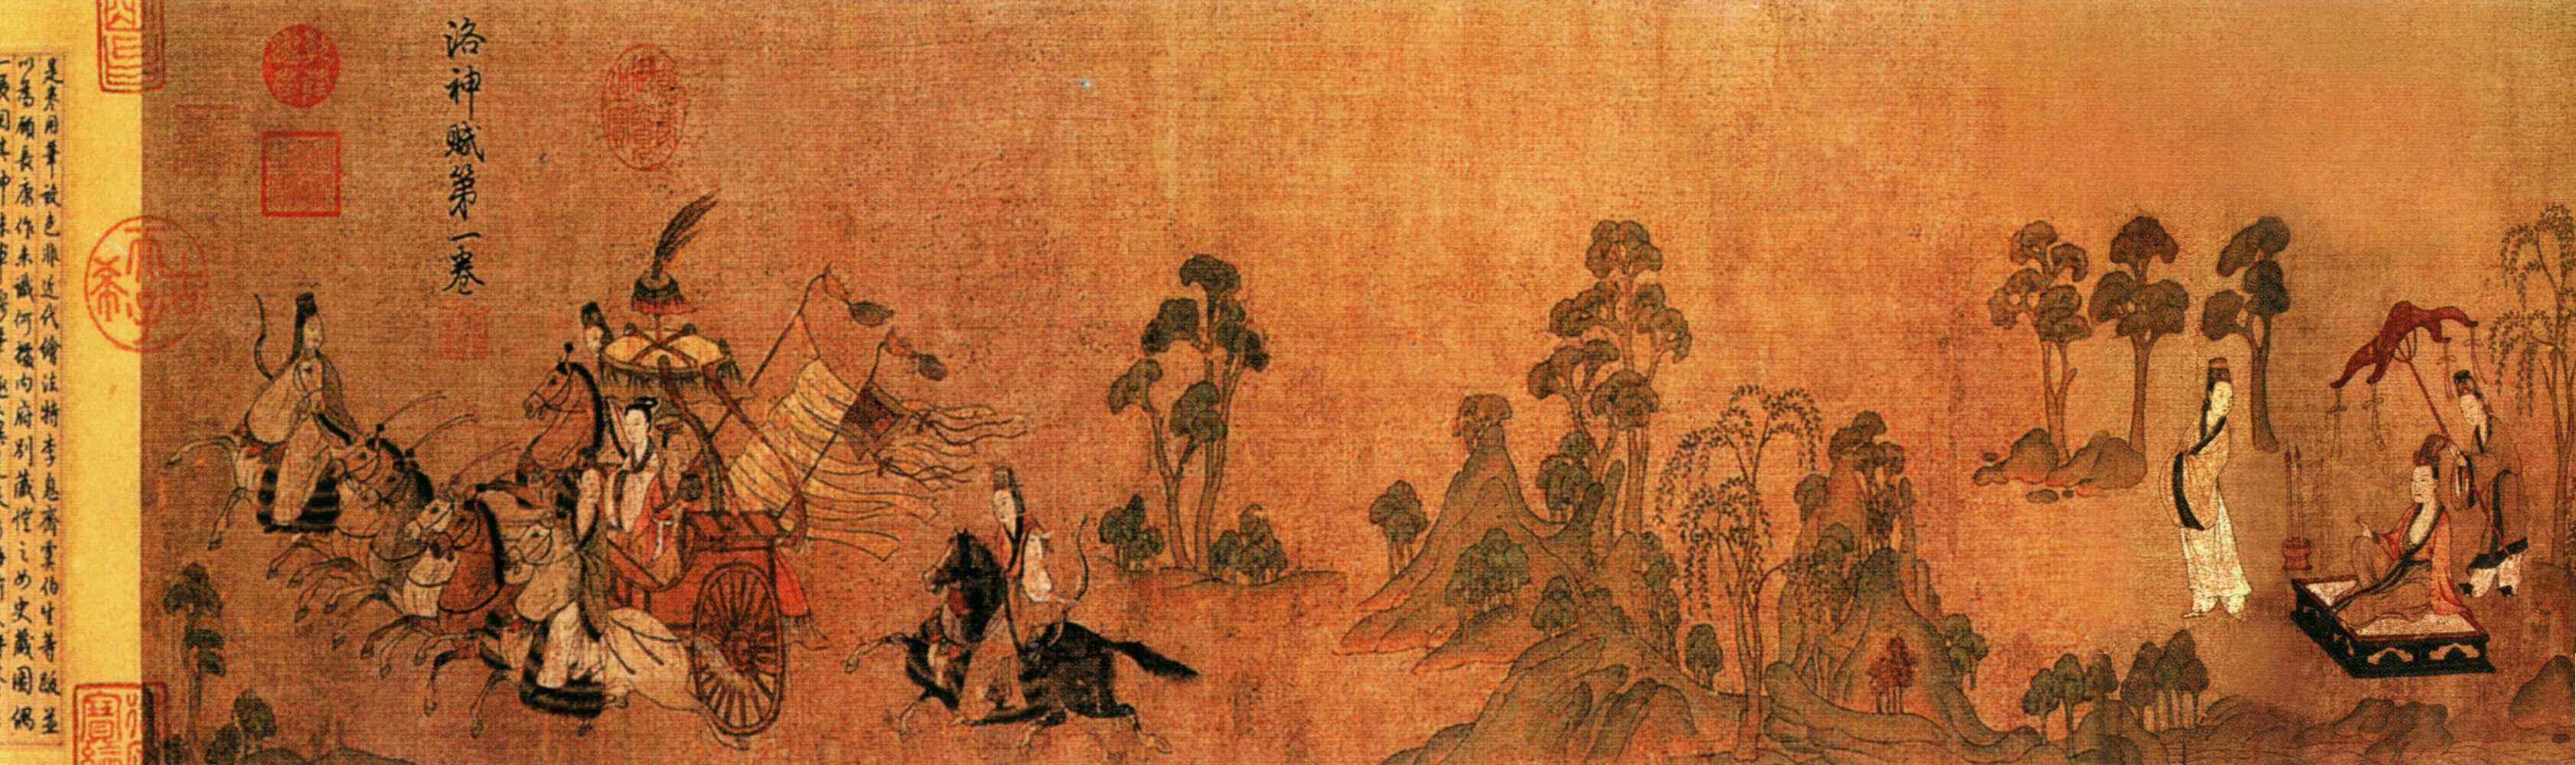 一代巨匠顾恺之在中国美术史上有什么贡献和影响?